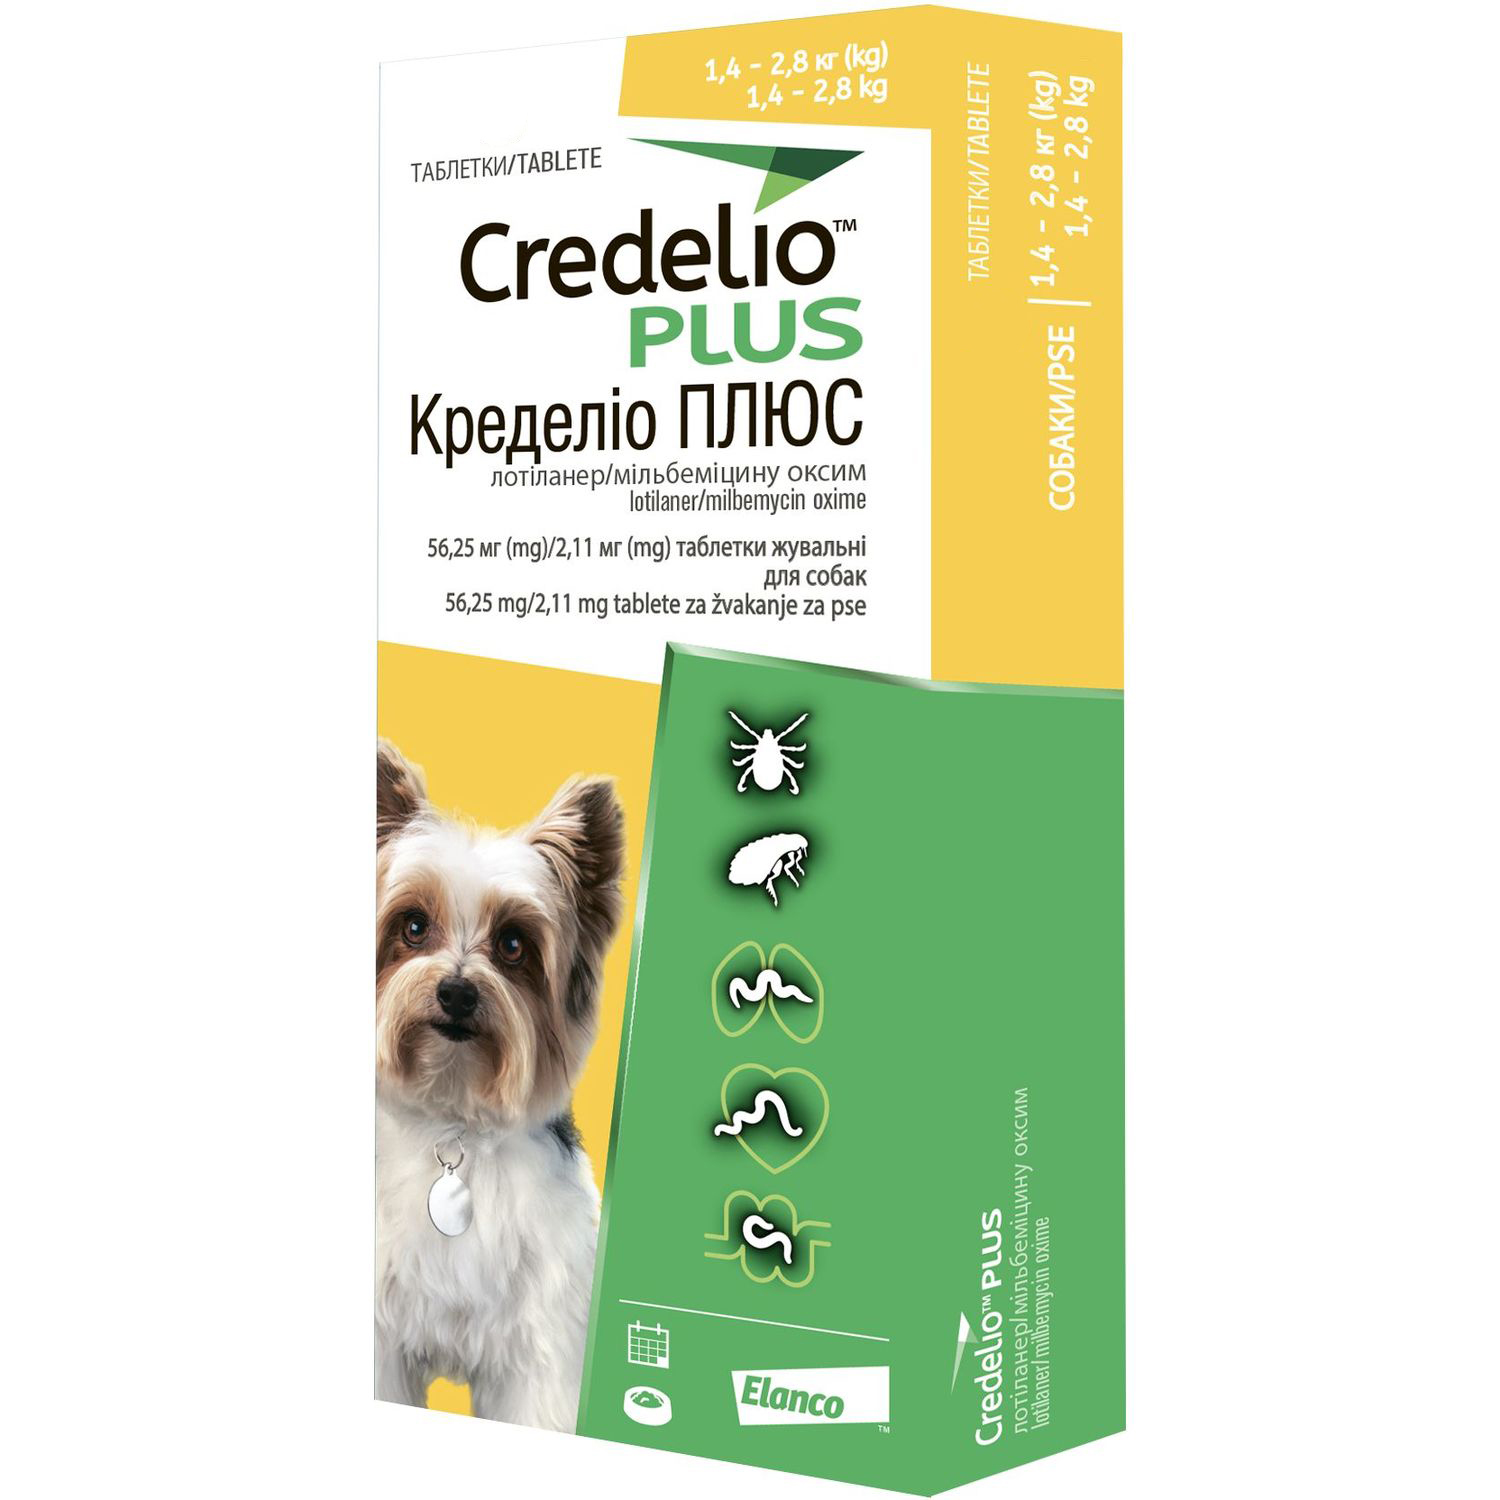 Противопаразитарные таблетки для собак Credelio Plus от блох, клещей и гельминтов 1.4-2.8 кг 1 шт. - фото 1